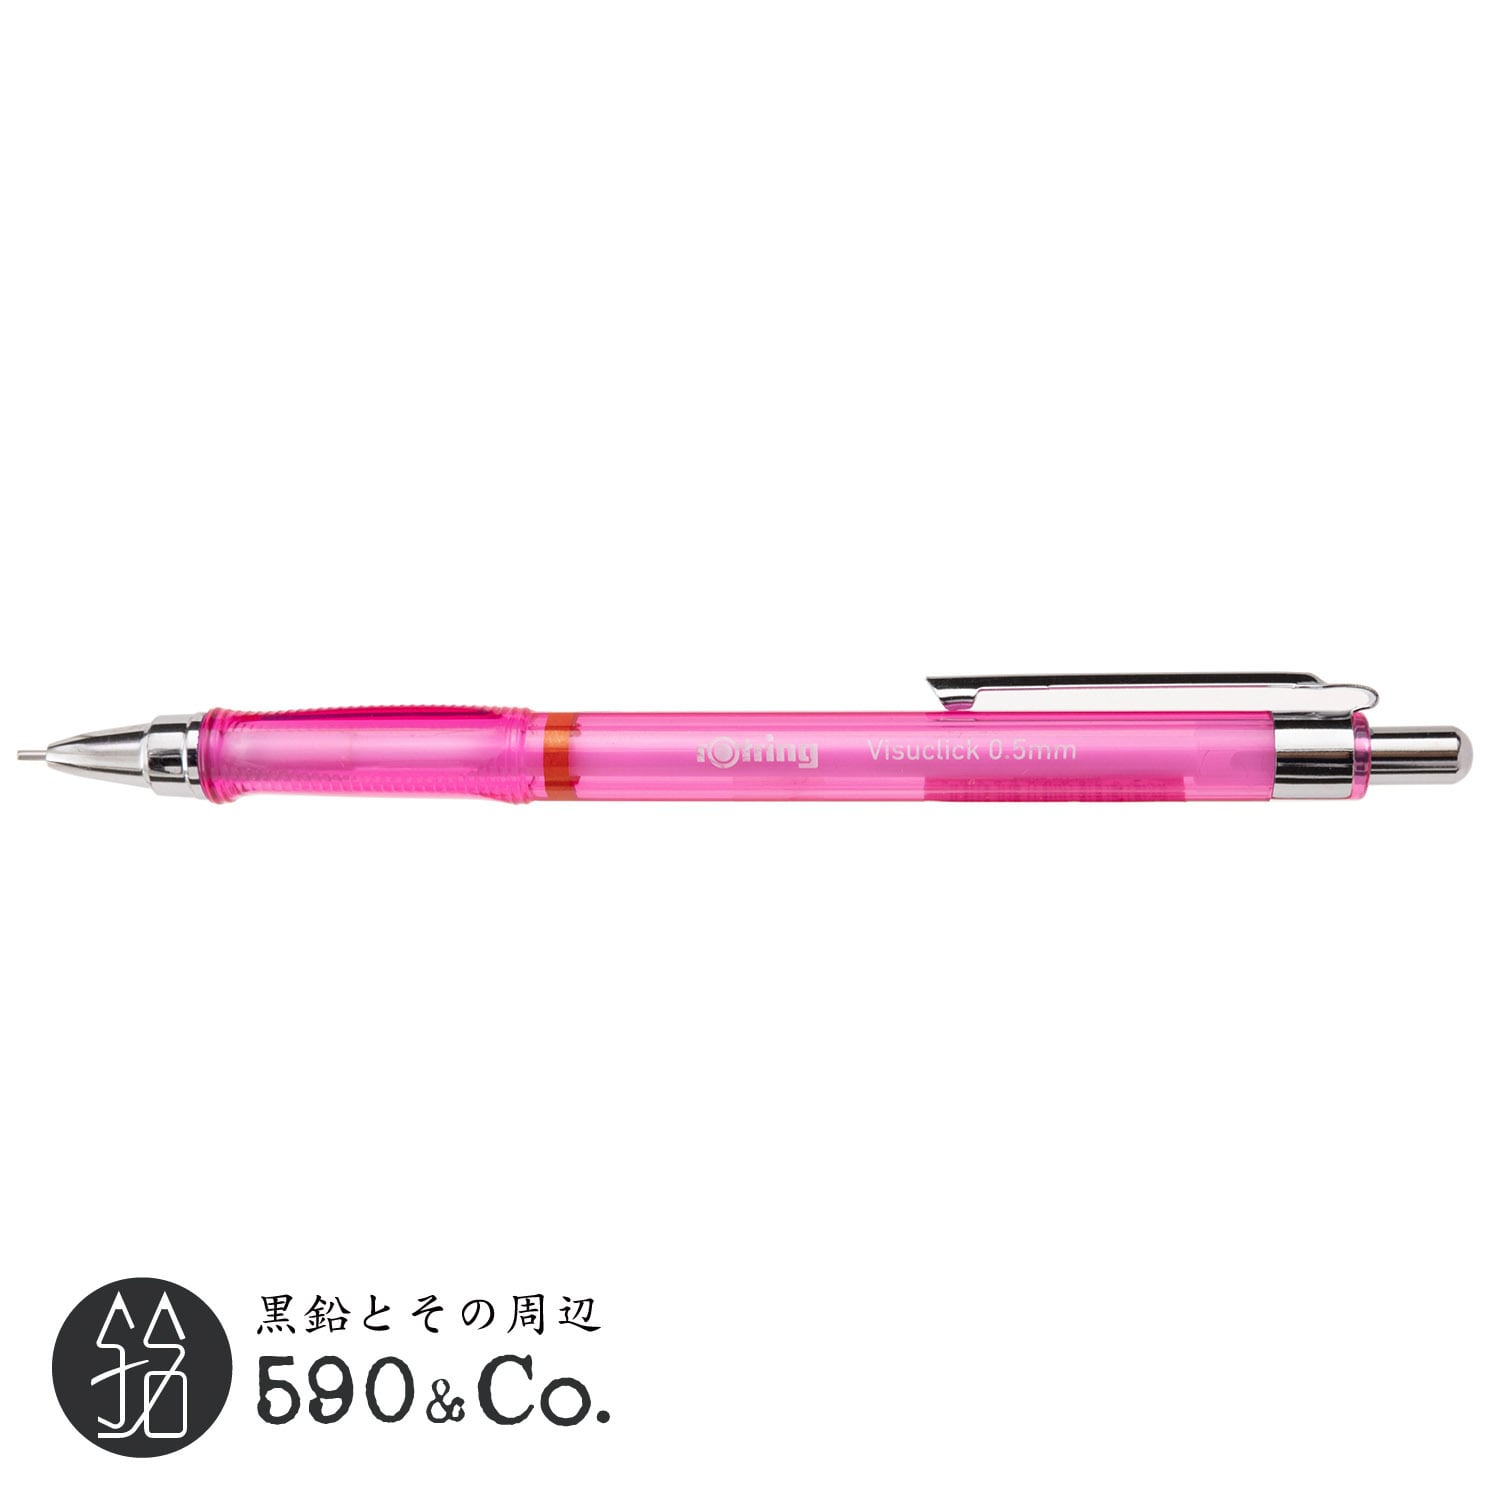 【ROTRING/ロットリング】Visuclick シャープペンシル (0.5mm/ピンク) 590Co.